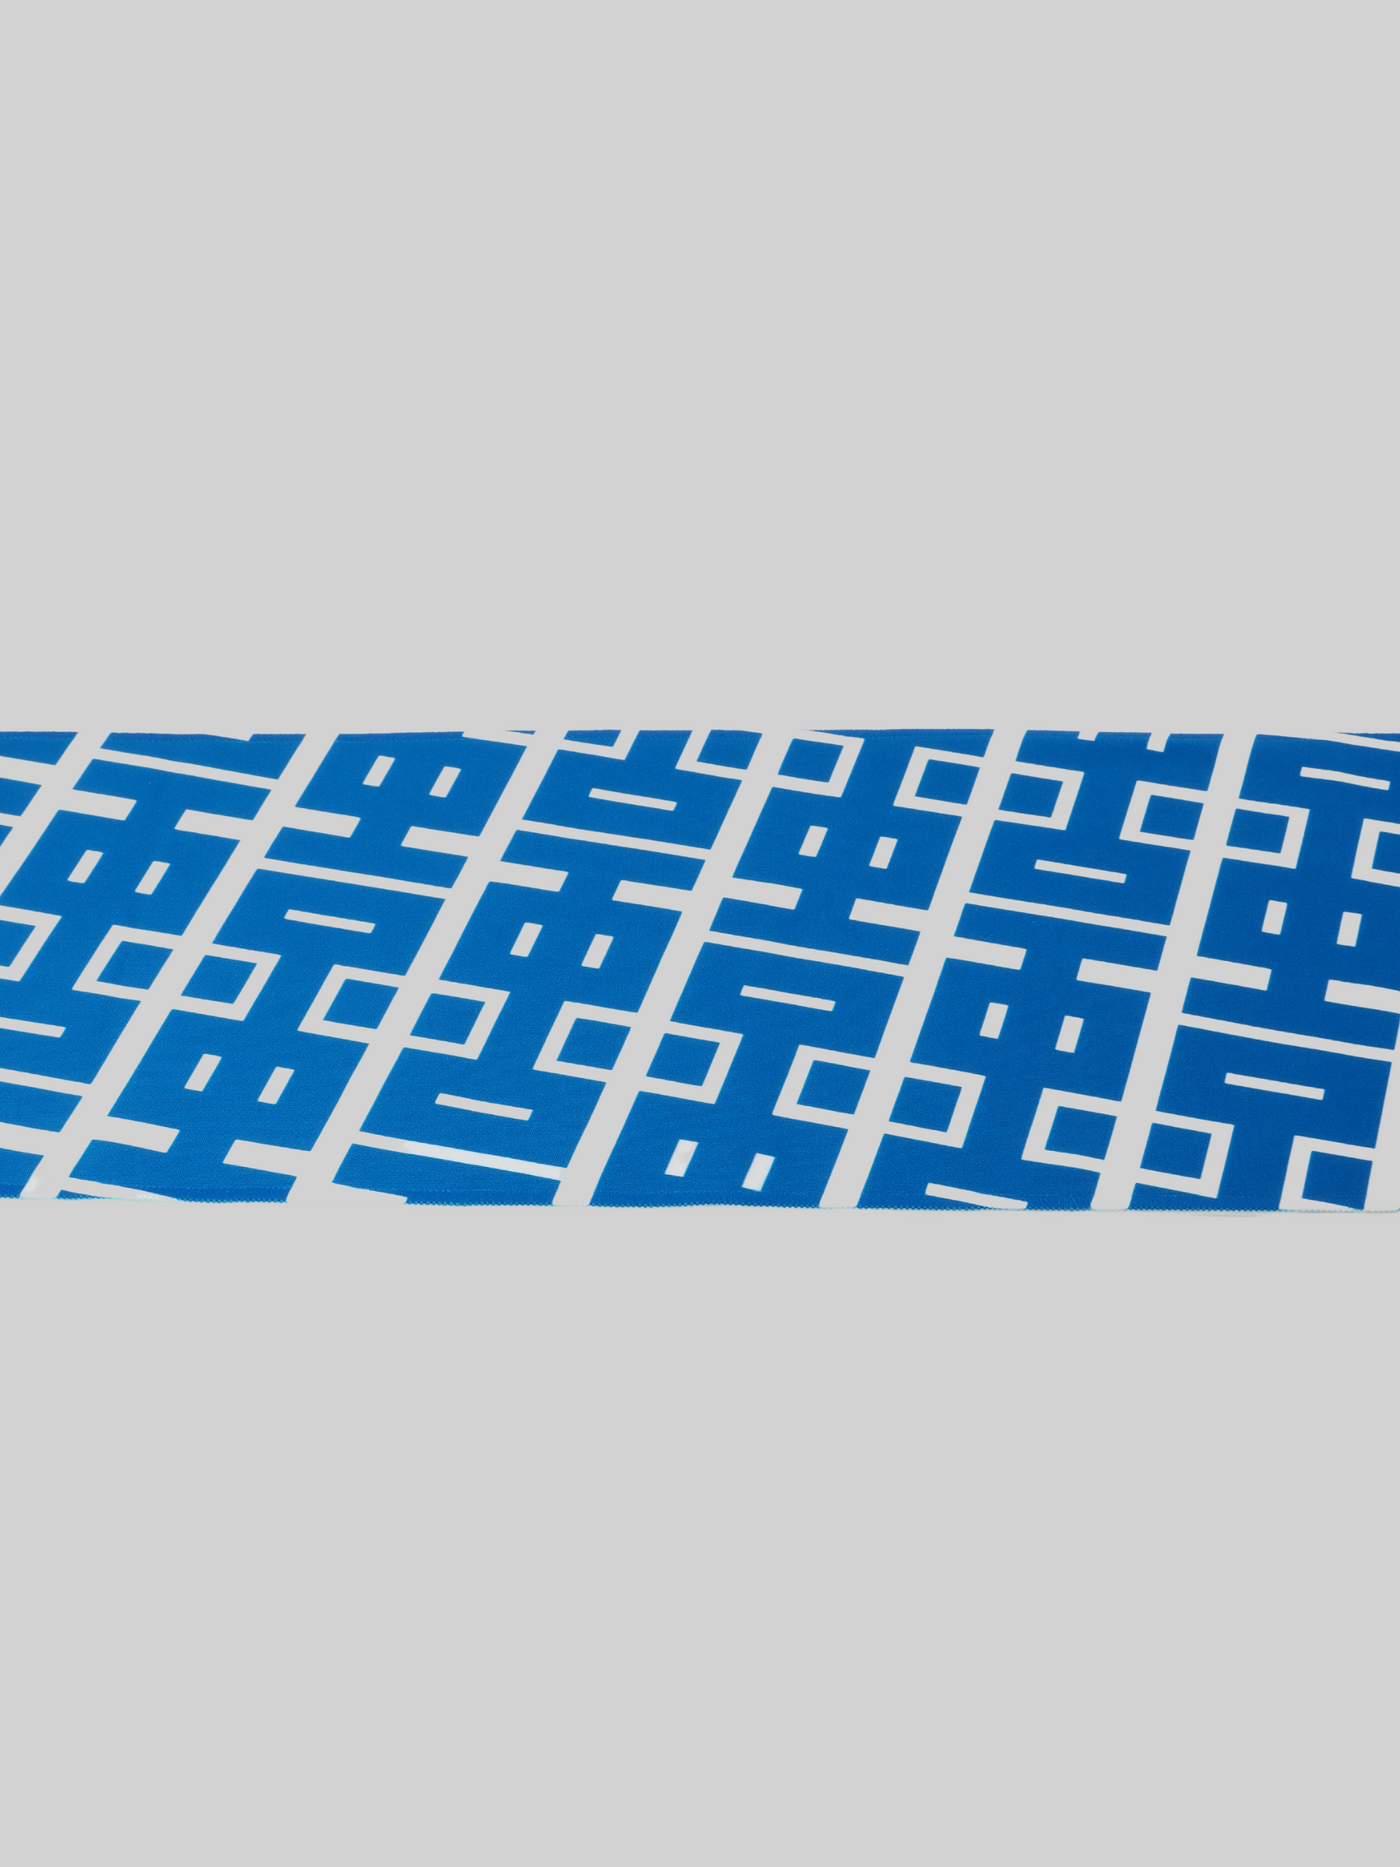 【中京オリジナルグッズショップコラボ商品】CHUKYO マフラータオル 中京ロゴ ブルー